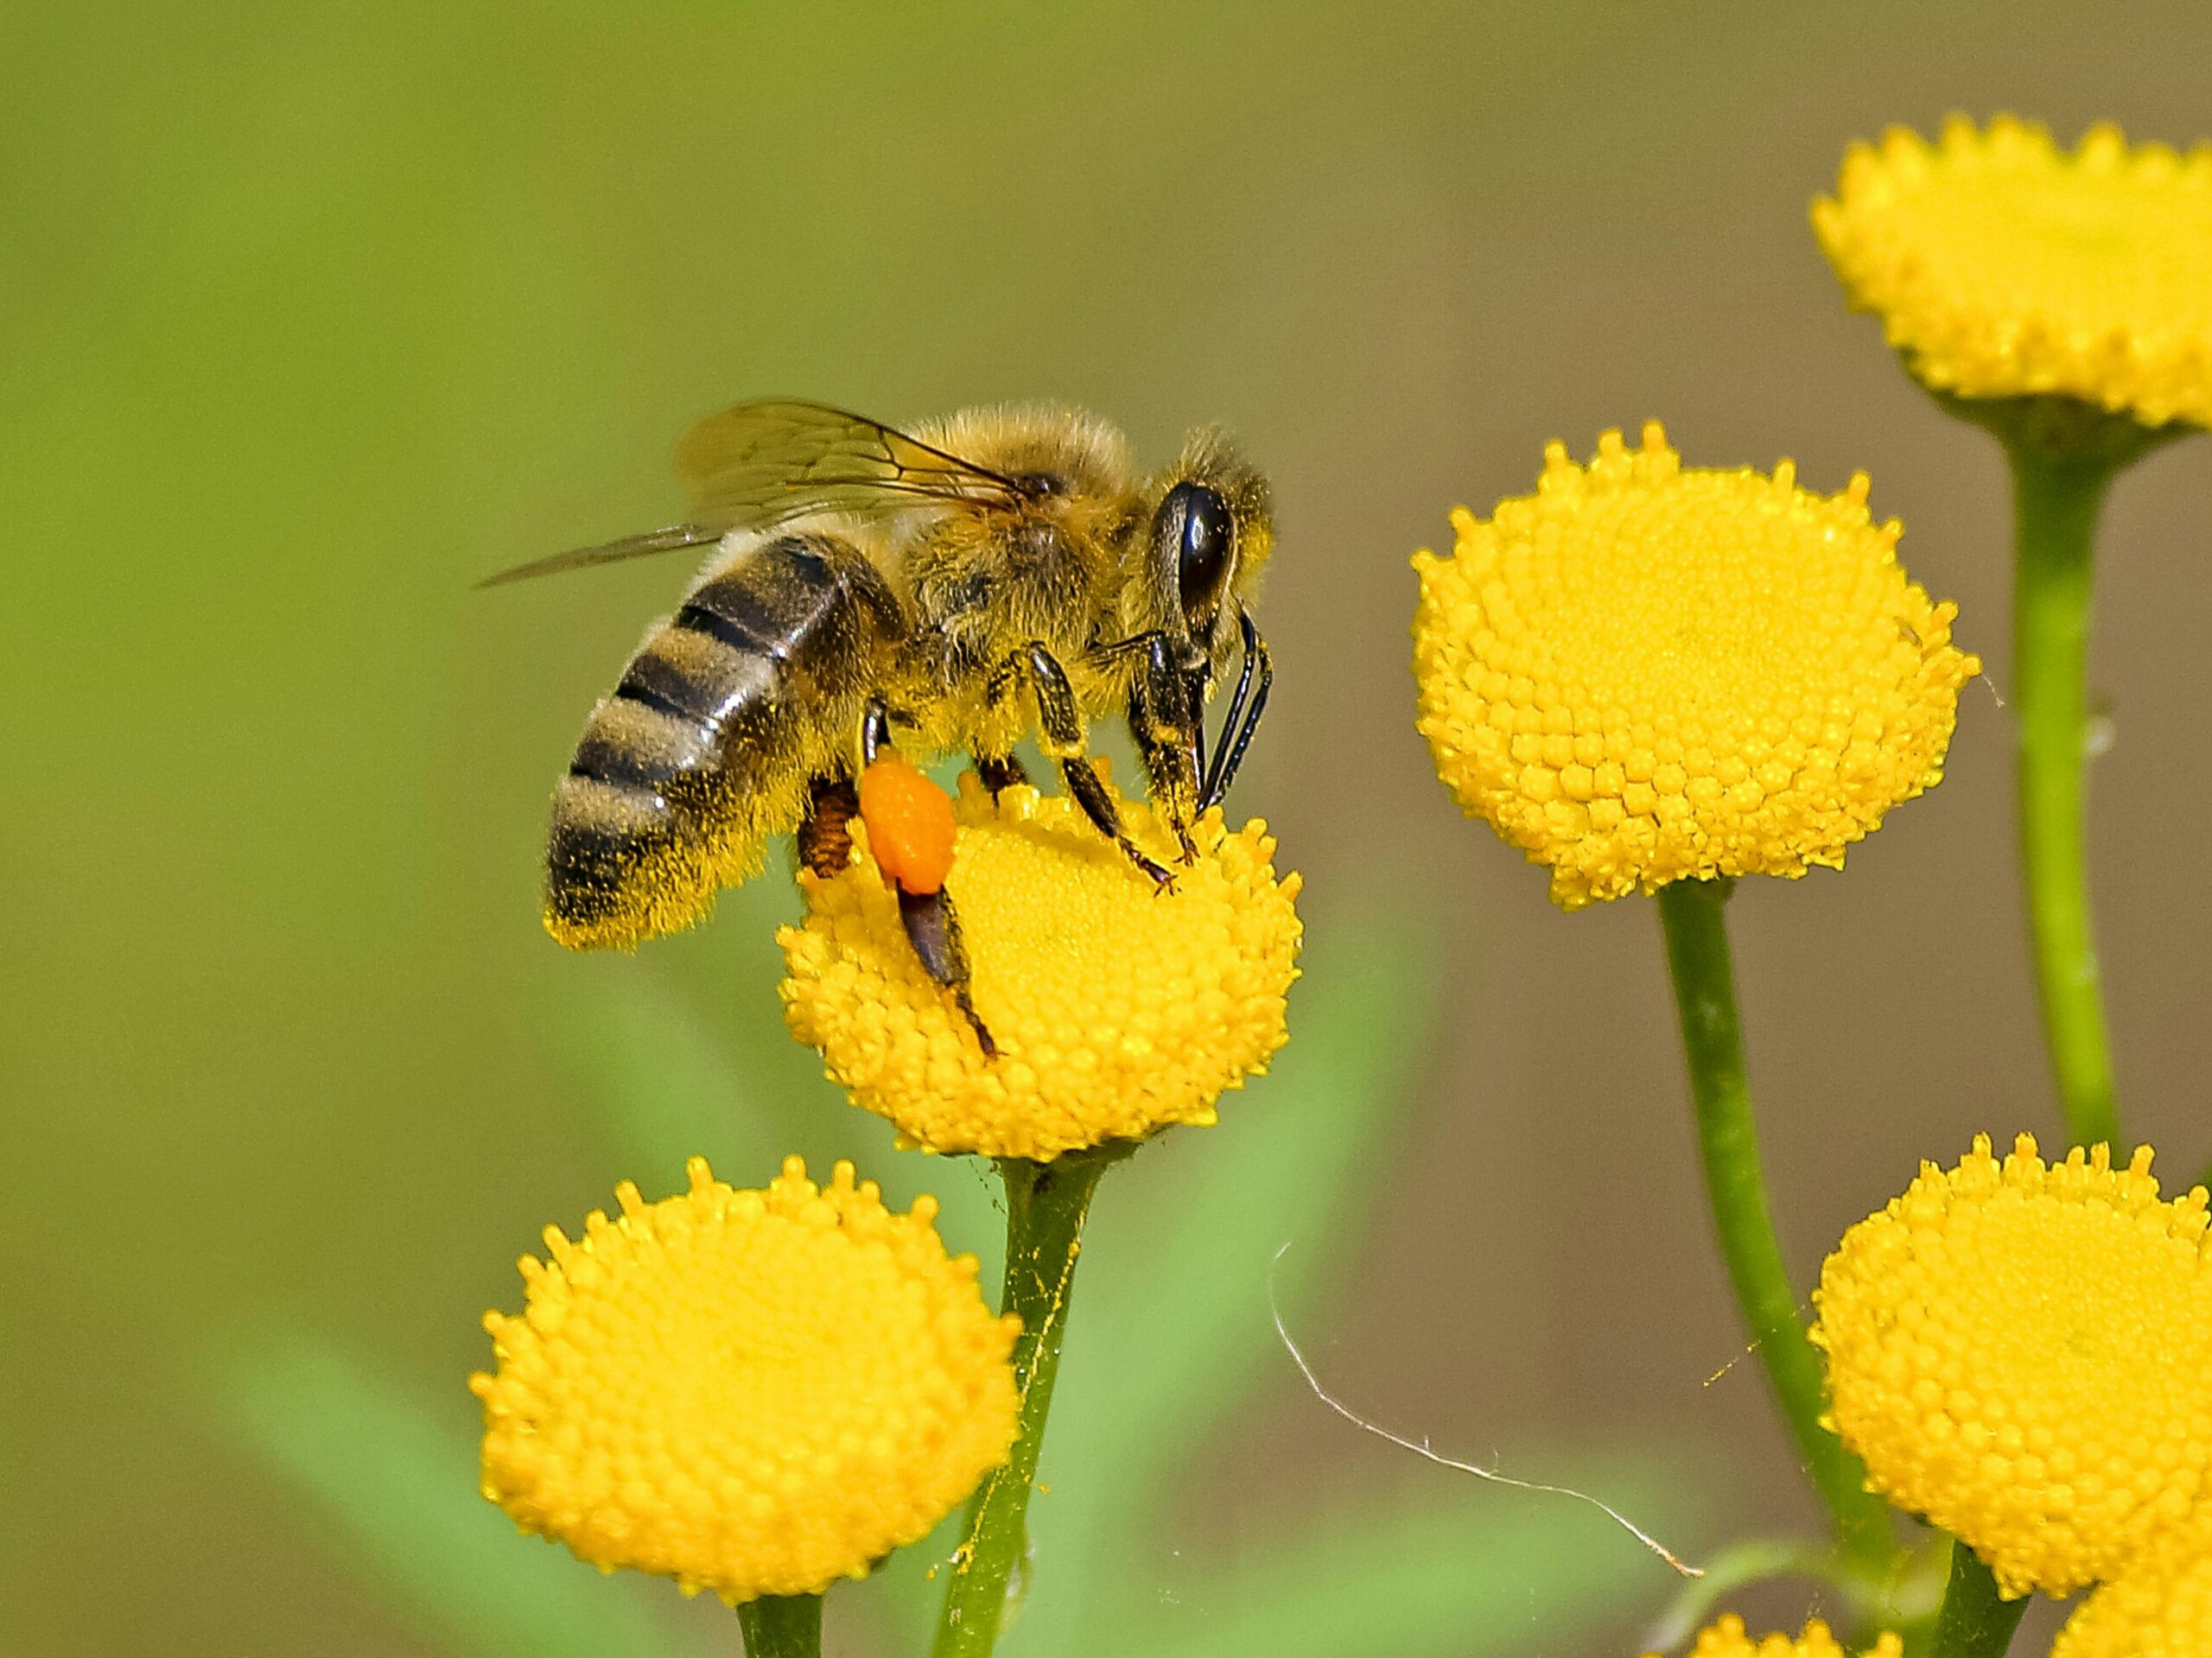 Właściwości zdrowotne i zastosowanie pierzgi pszczelej